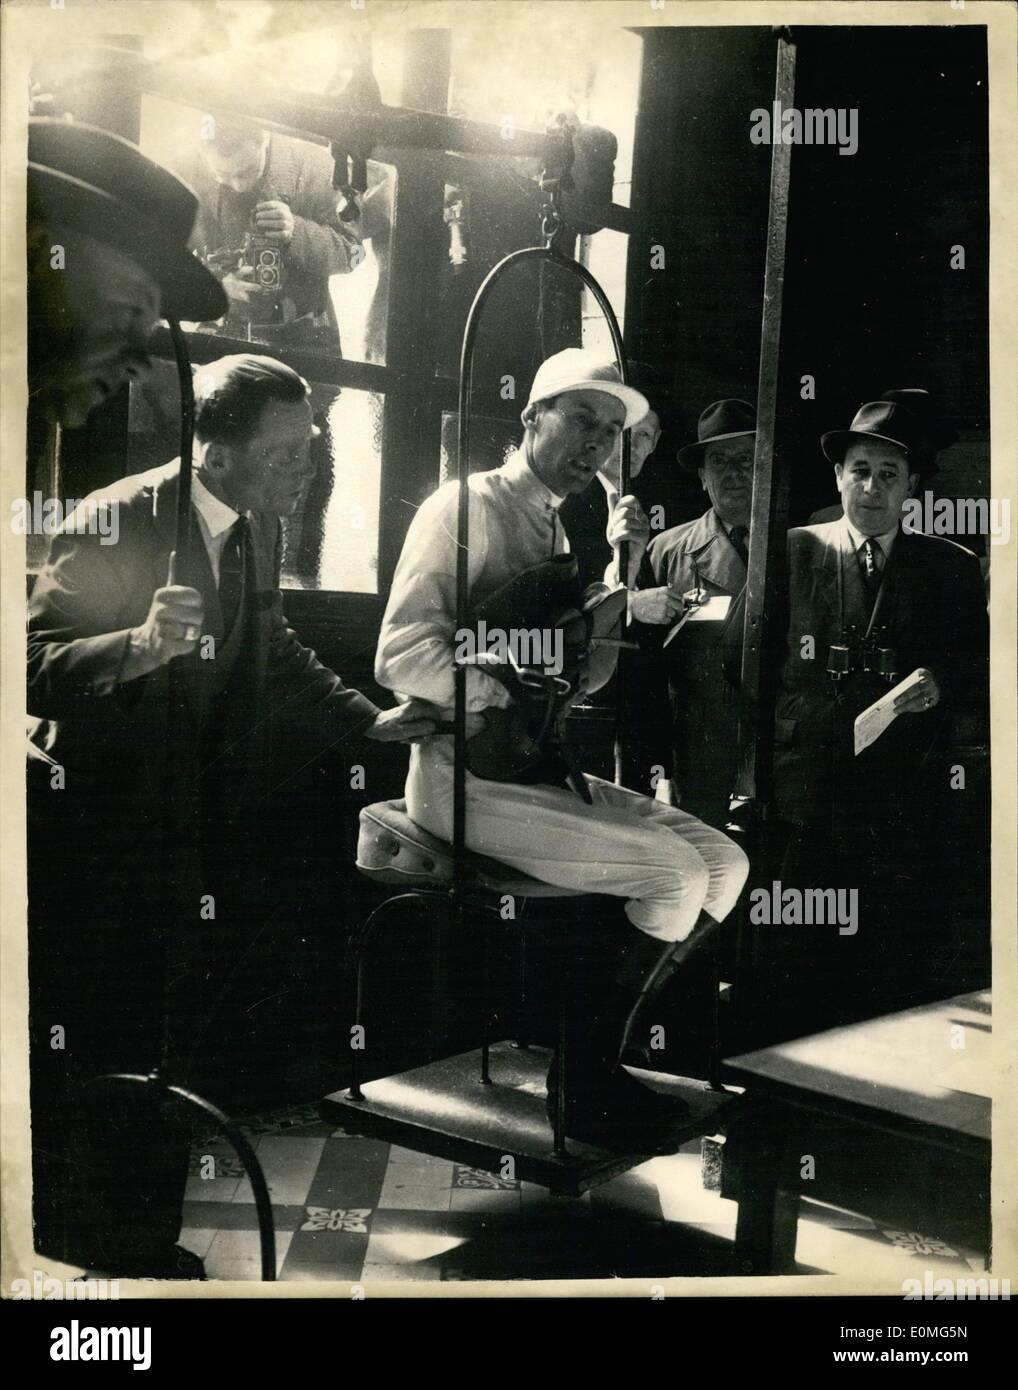 Apr. 04, 1955 - Capitano Peter Townsend va in per una gara - e vince. Weighing-In: Gruppo capitano Peter Townsend ieri ha preso parte a una corsa di cavalli a Maisons-Laffitte, nei pressi di Parigi - e ha vinto su ''Nimrod''. La foto mostra il Capitano Townsend è ''pesato-NELL'' per la gara. Foto Stock